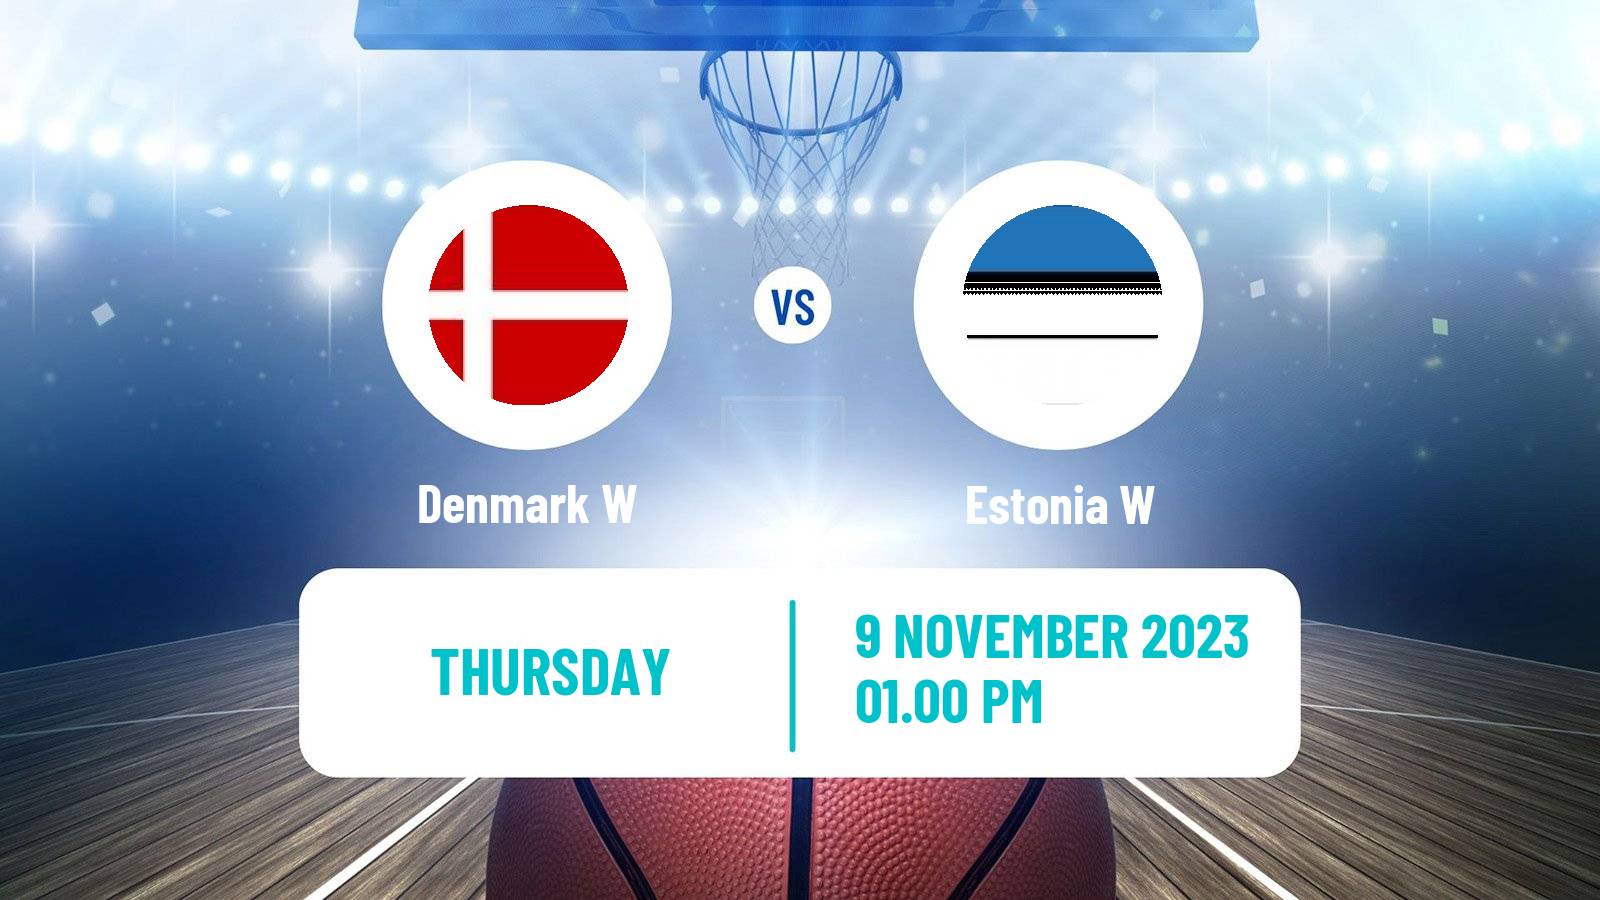 Basketball EuroBasket Women Denmark W - Estonia W